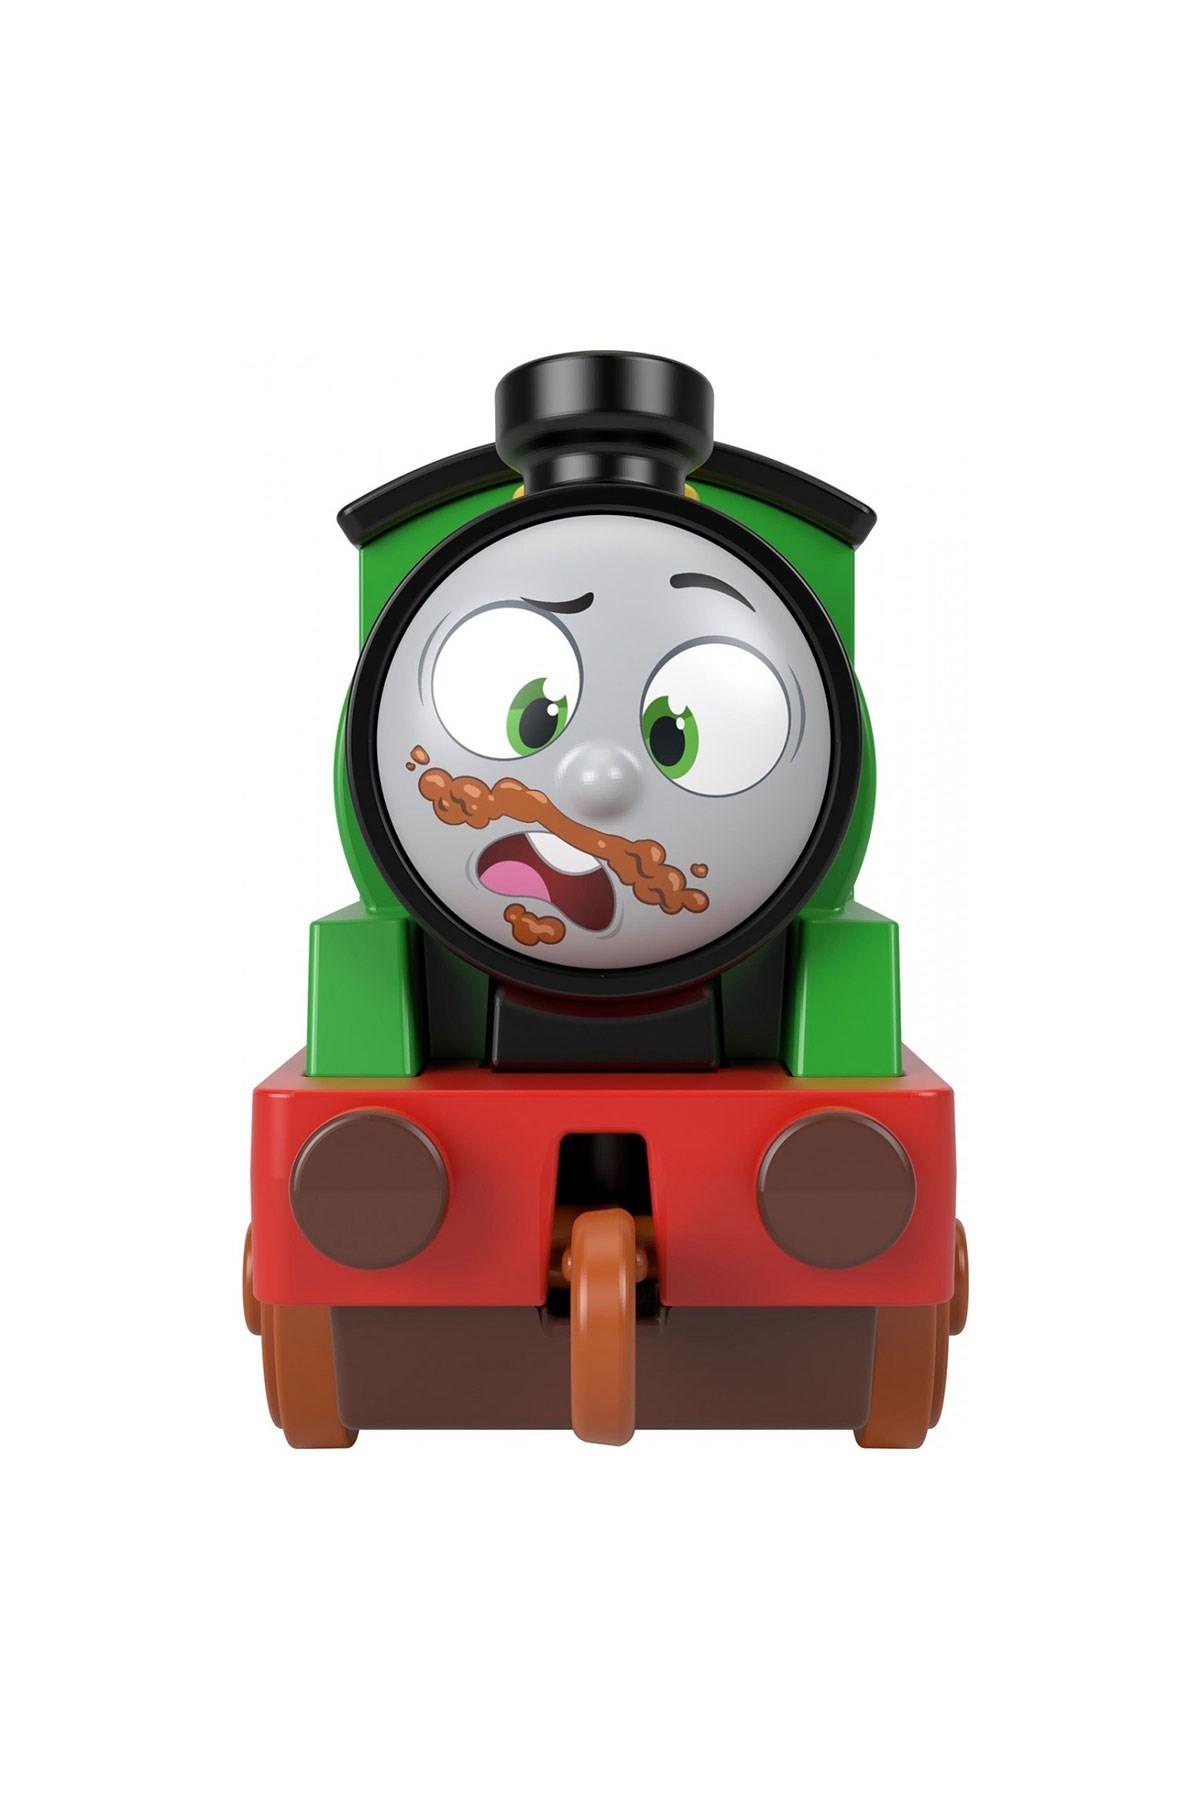 Thomas ve Arkadaşları Sür Bırak Küçük Tekli Tren HHN36